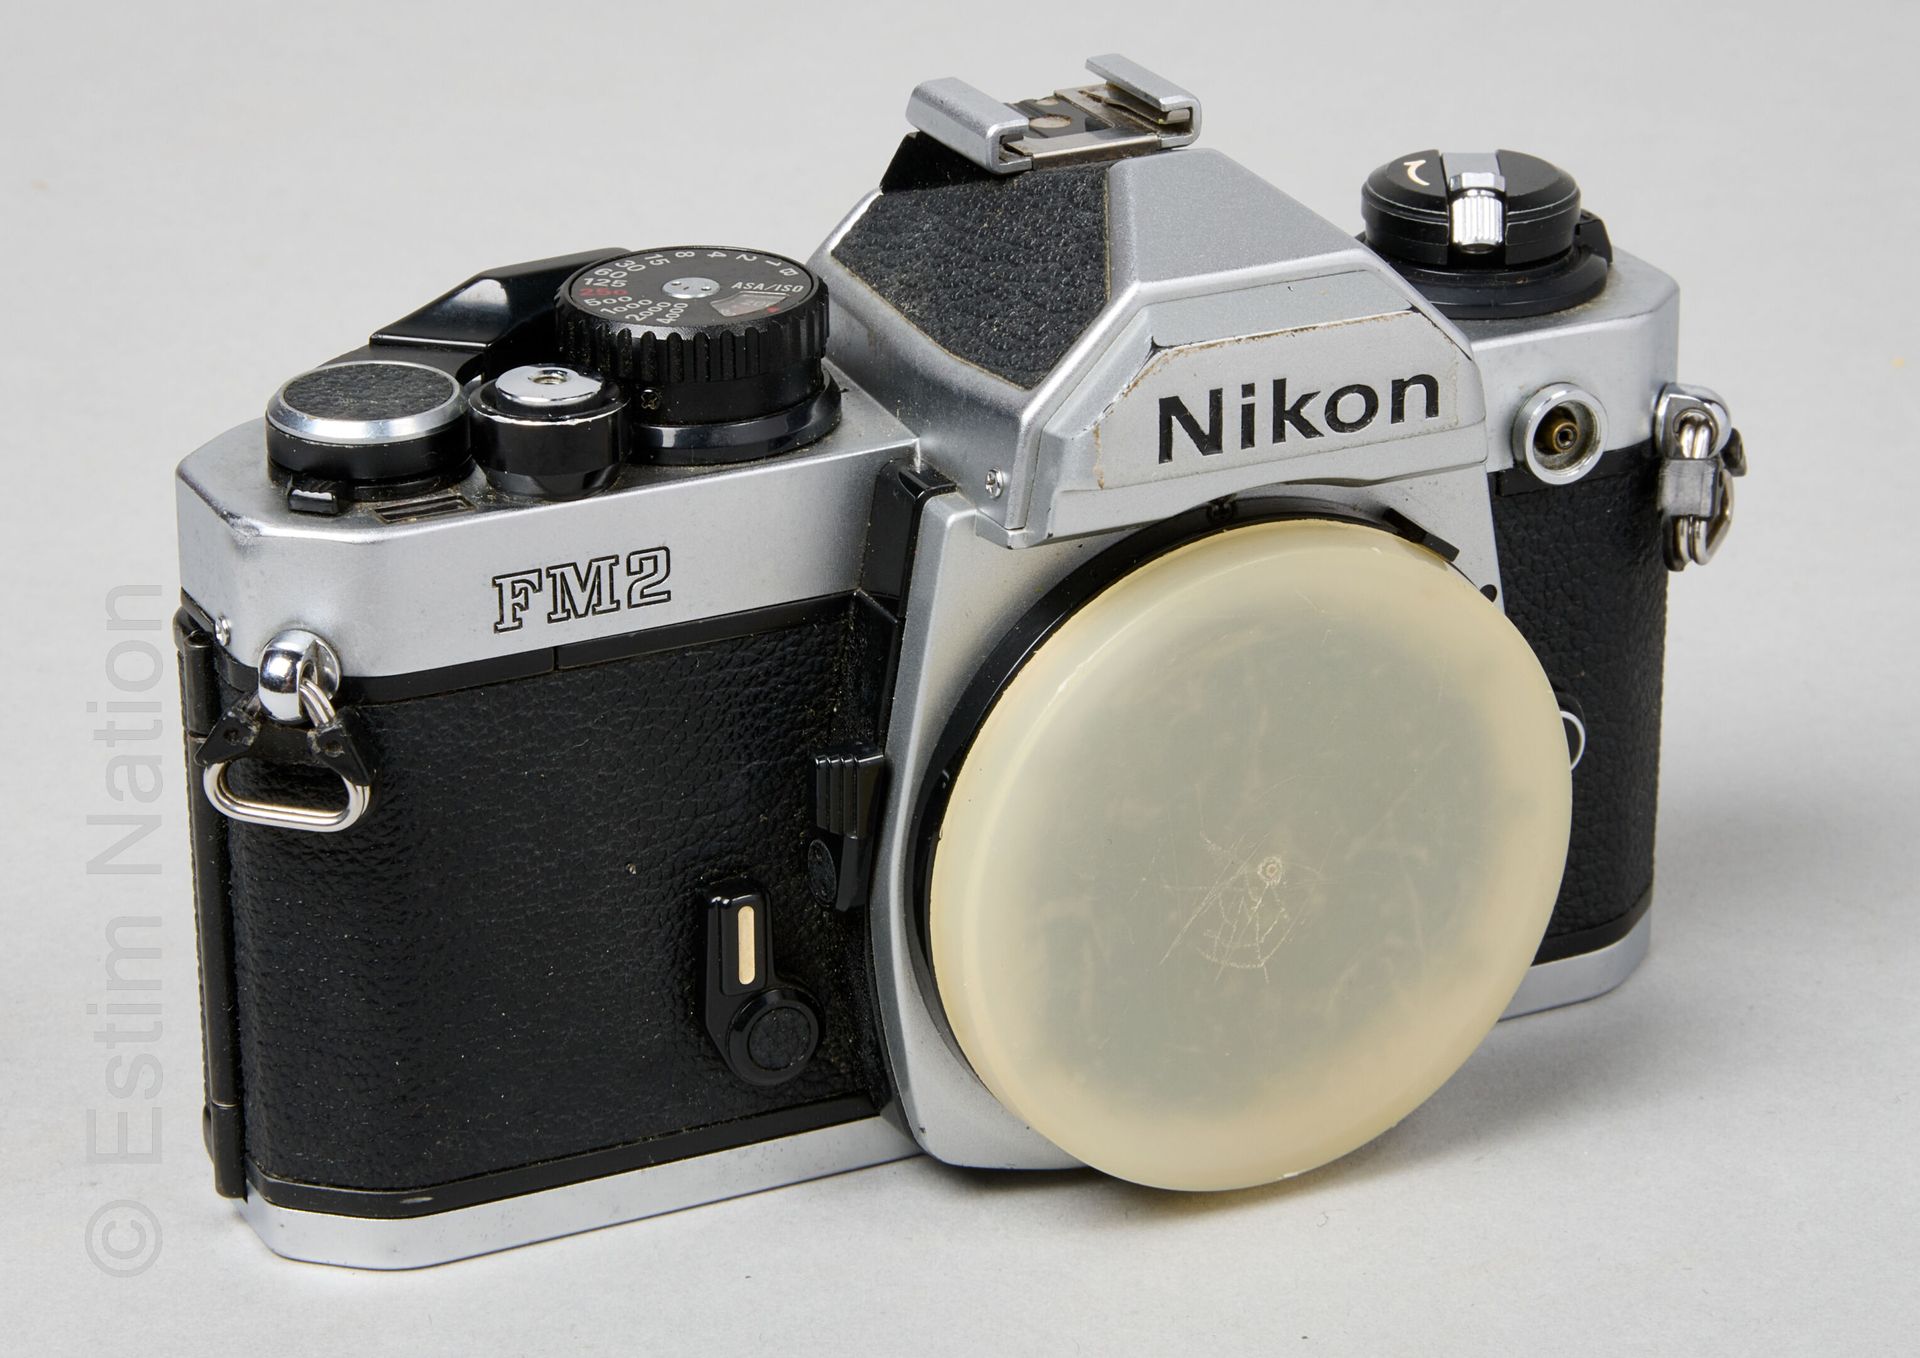 APPAREILS PHOTOGRAPHIQUES NIKON

Boîtier d'appareil photo en métal et simili cui&hellip;